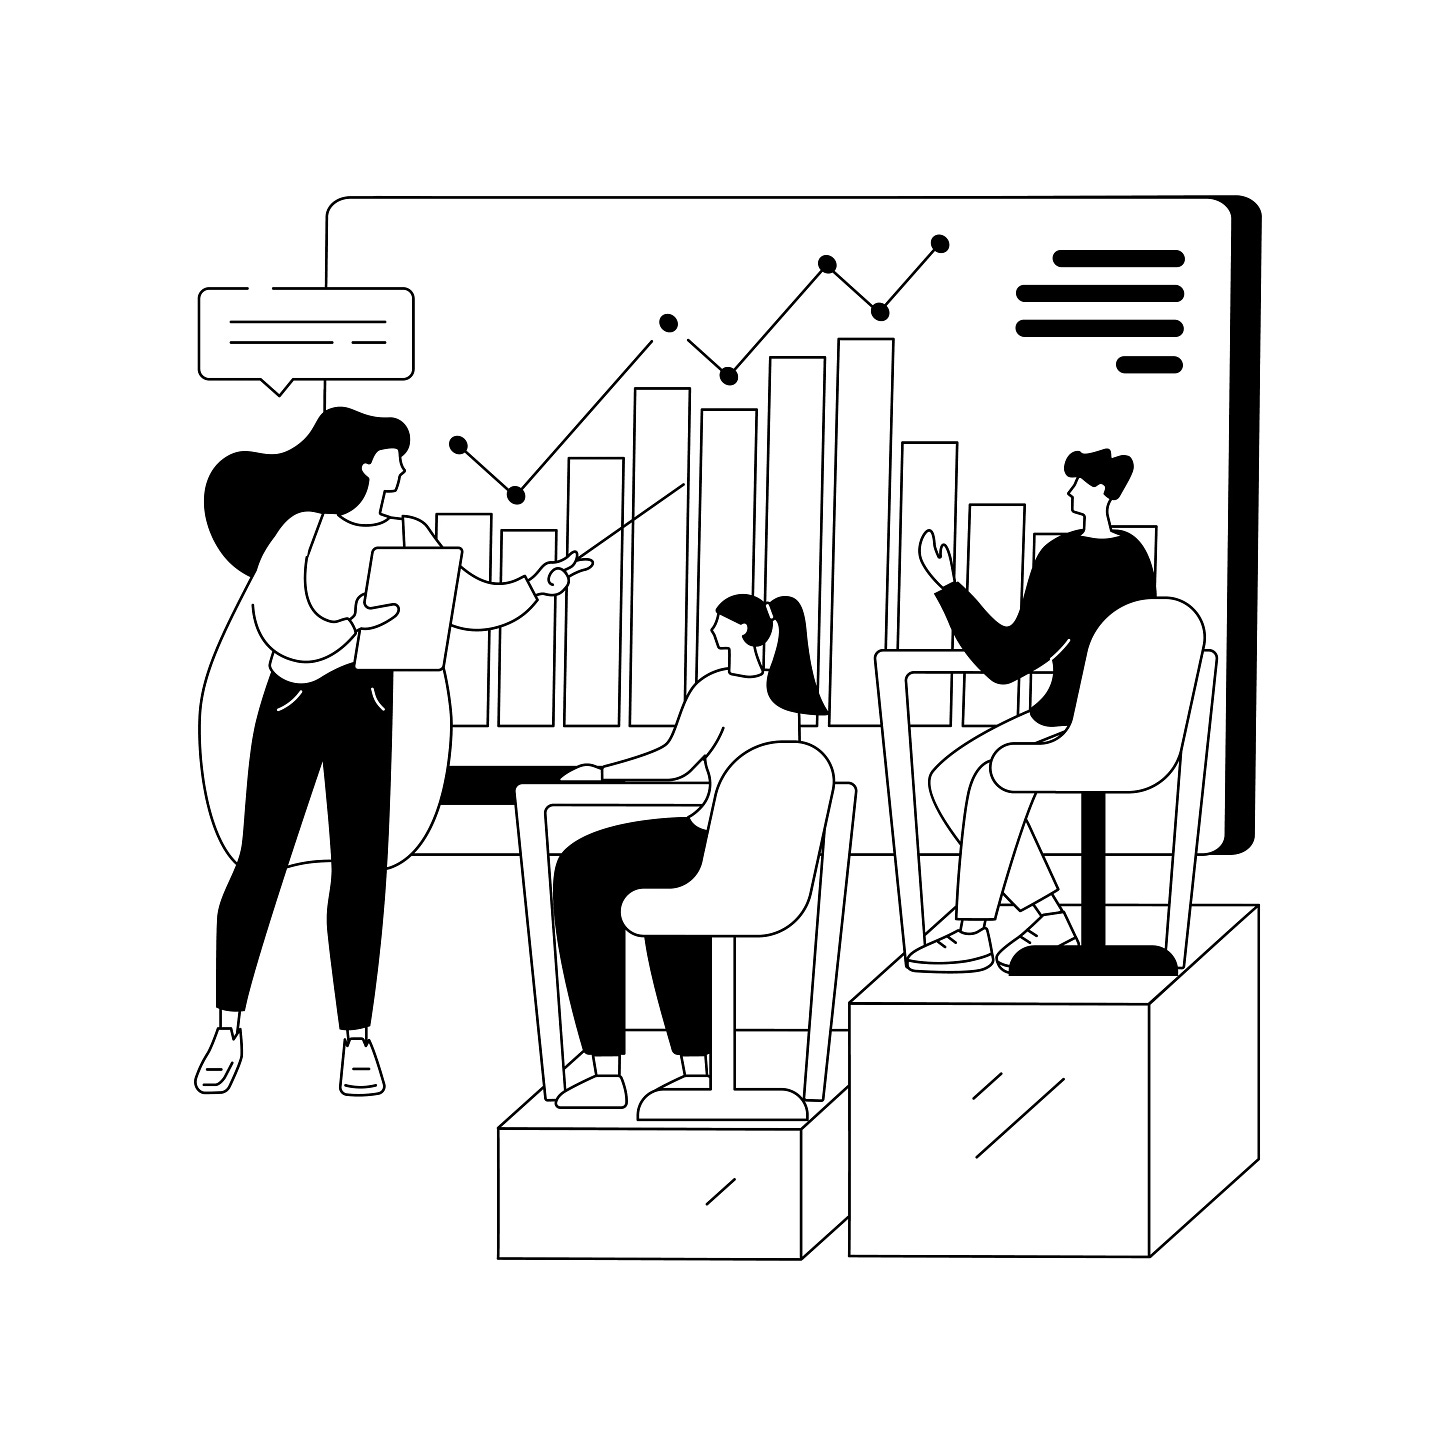 Desenho de uma pessoa apresentando um gráfico para outras 2 pessoas numa sala.